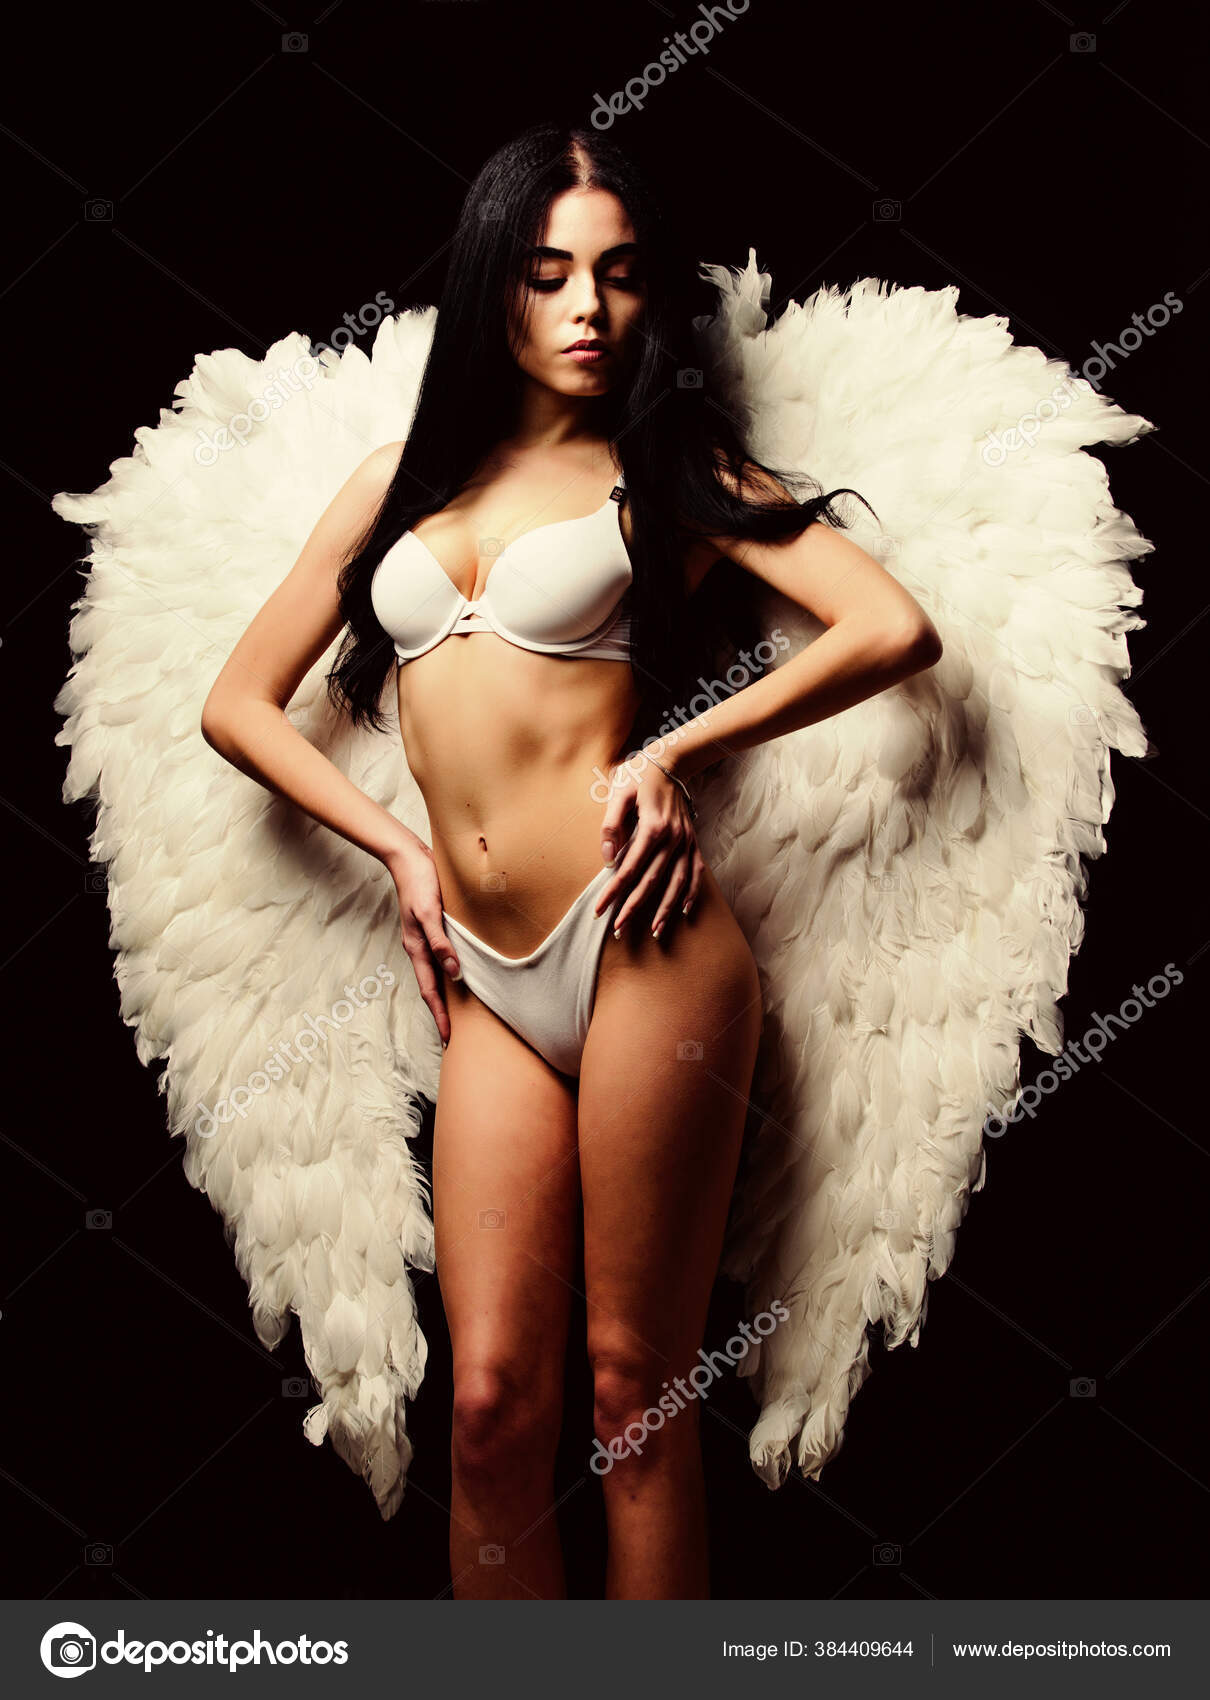 堕天使写真素材 ロイヤリティフリー堕天使画像 Depositphotos